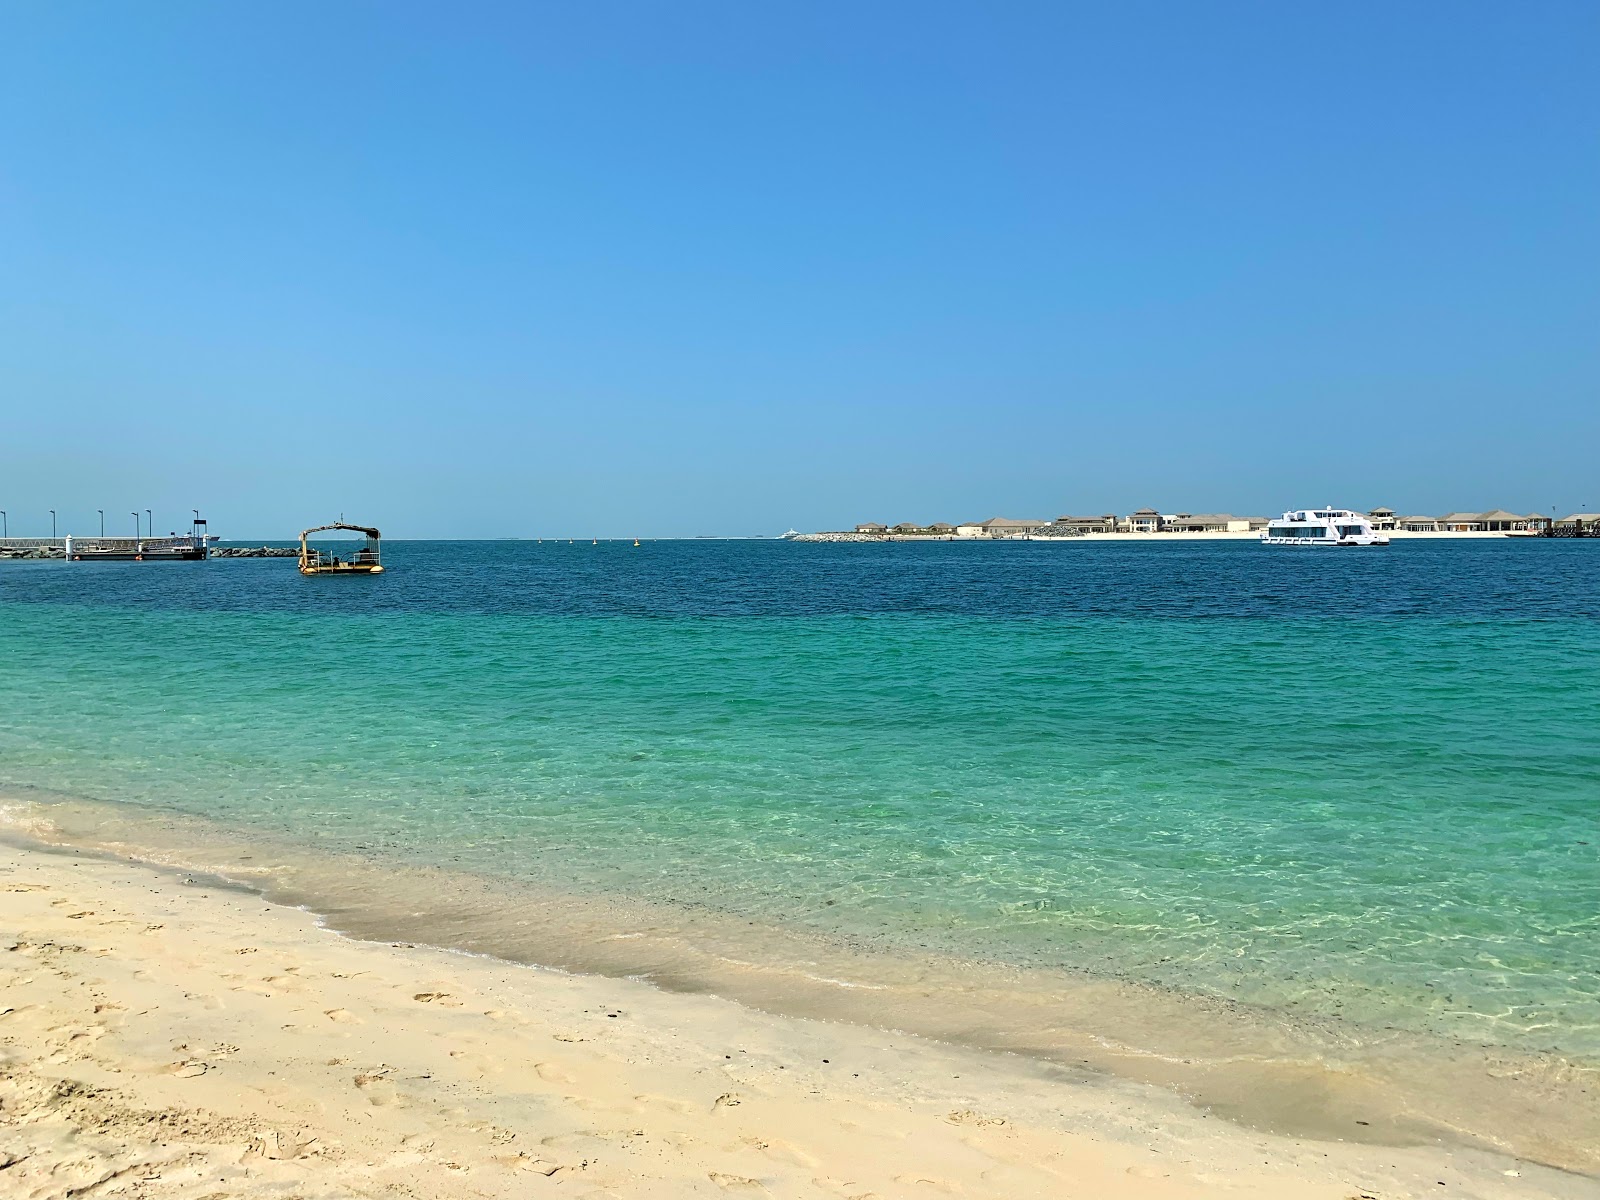 迪拜朱美拉海滩的照片 具有非常干净级别的清洁度